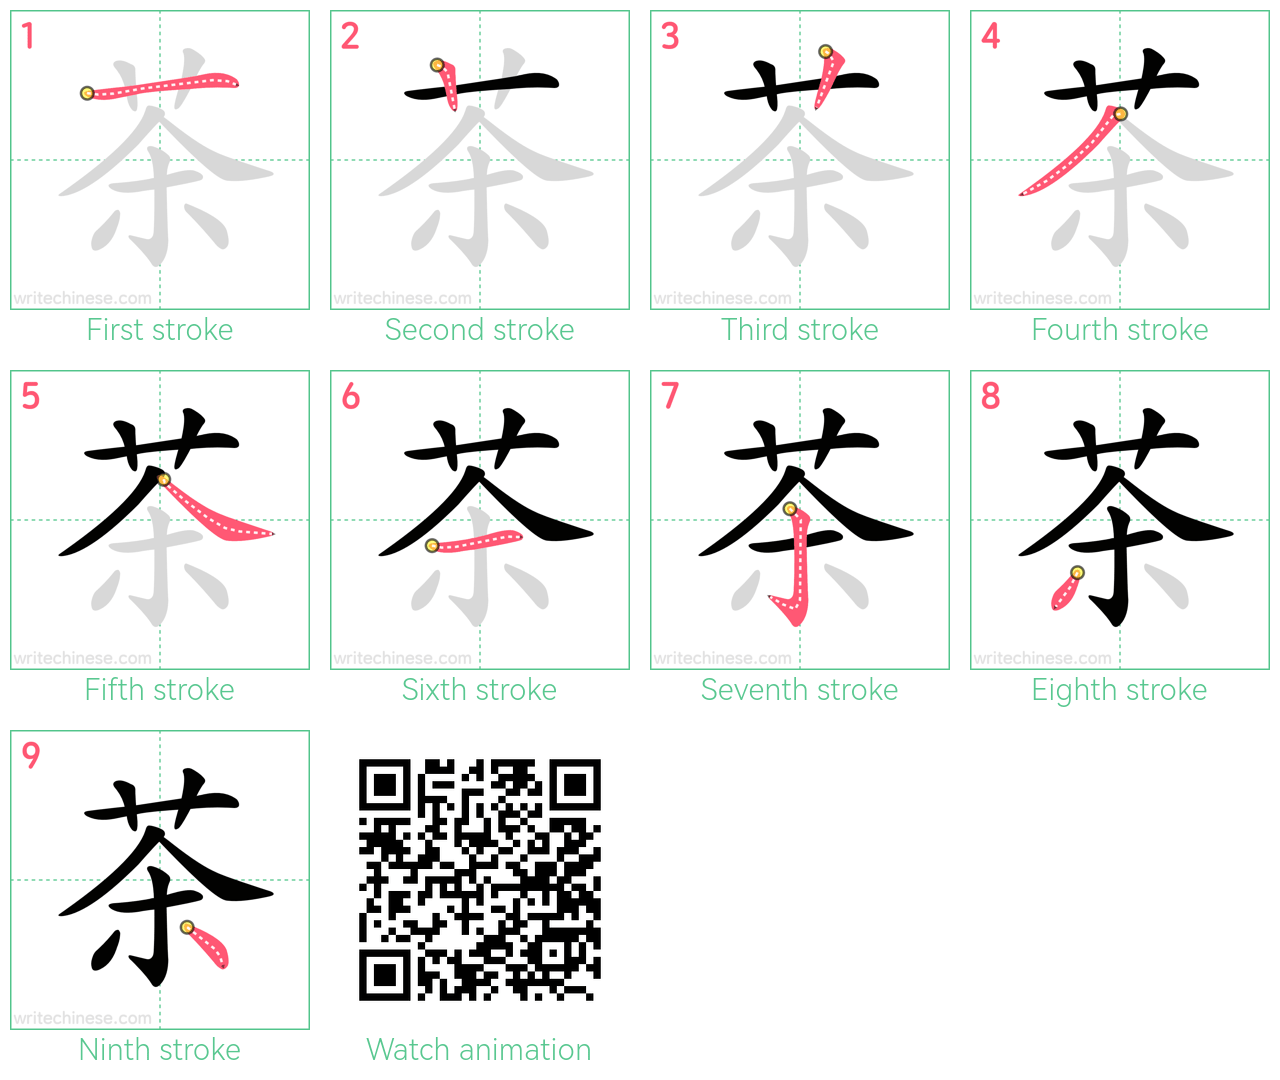 茶 step-by-step stroke order diagrams